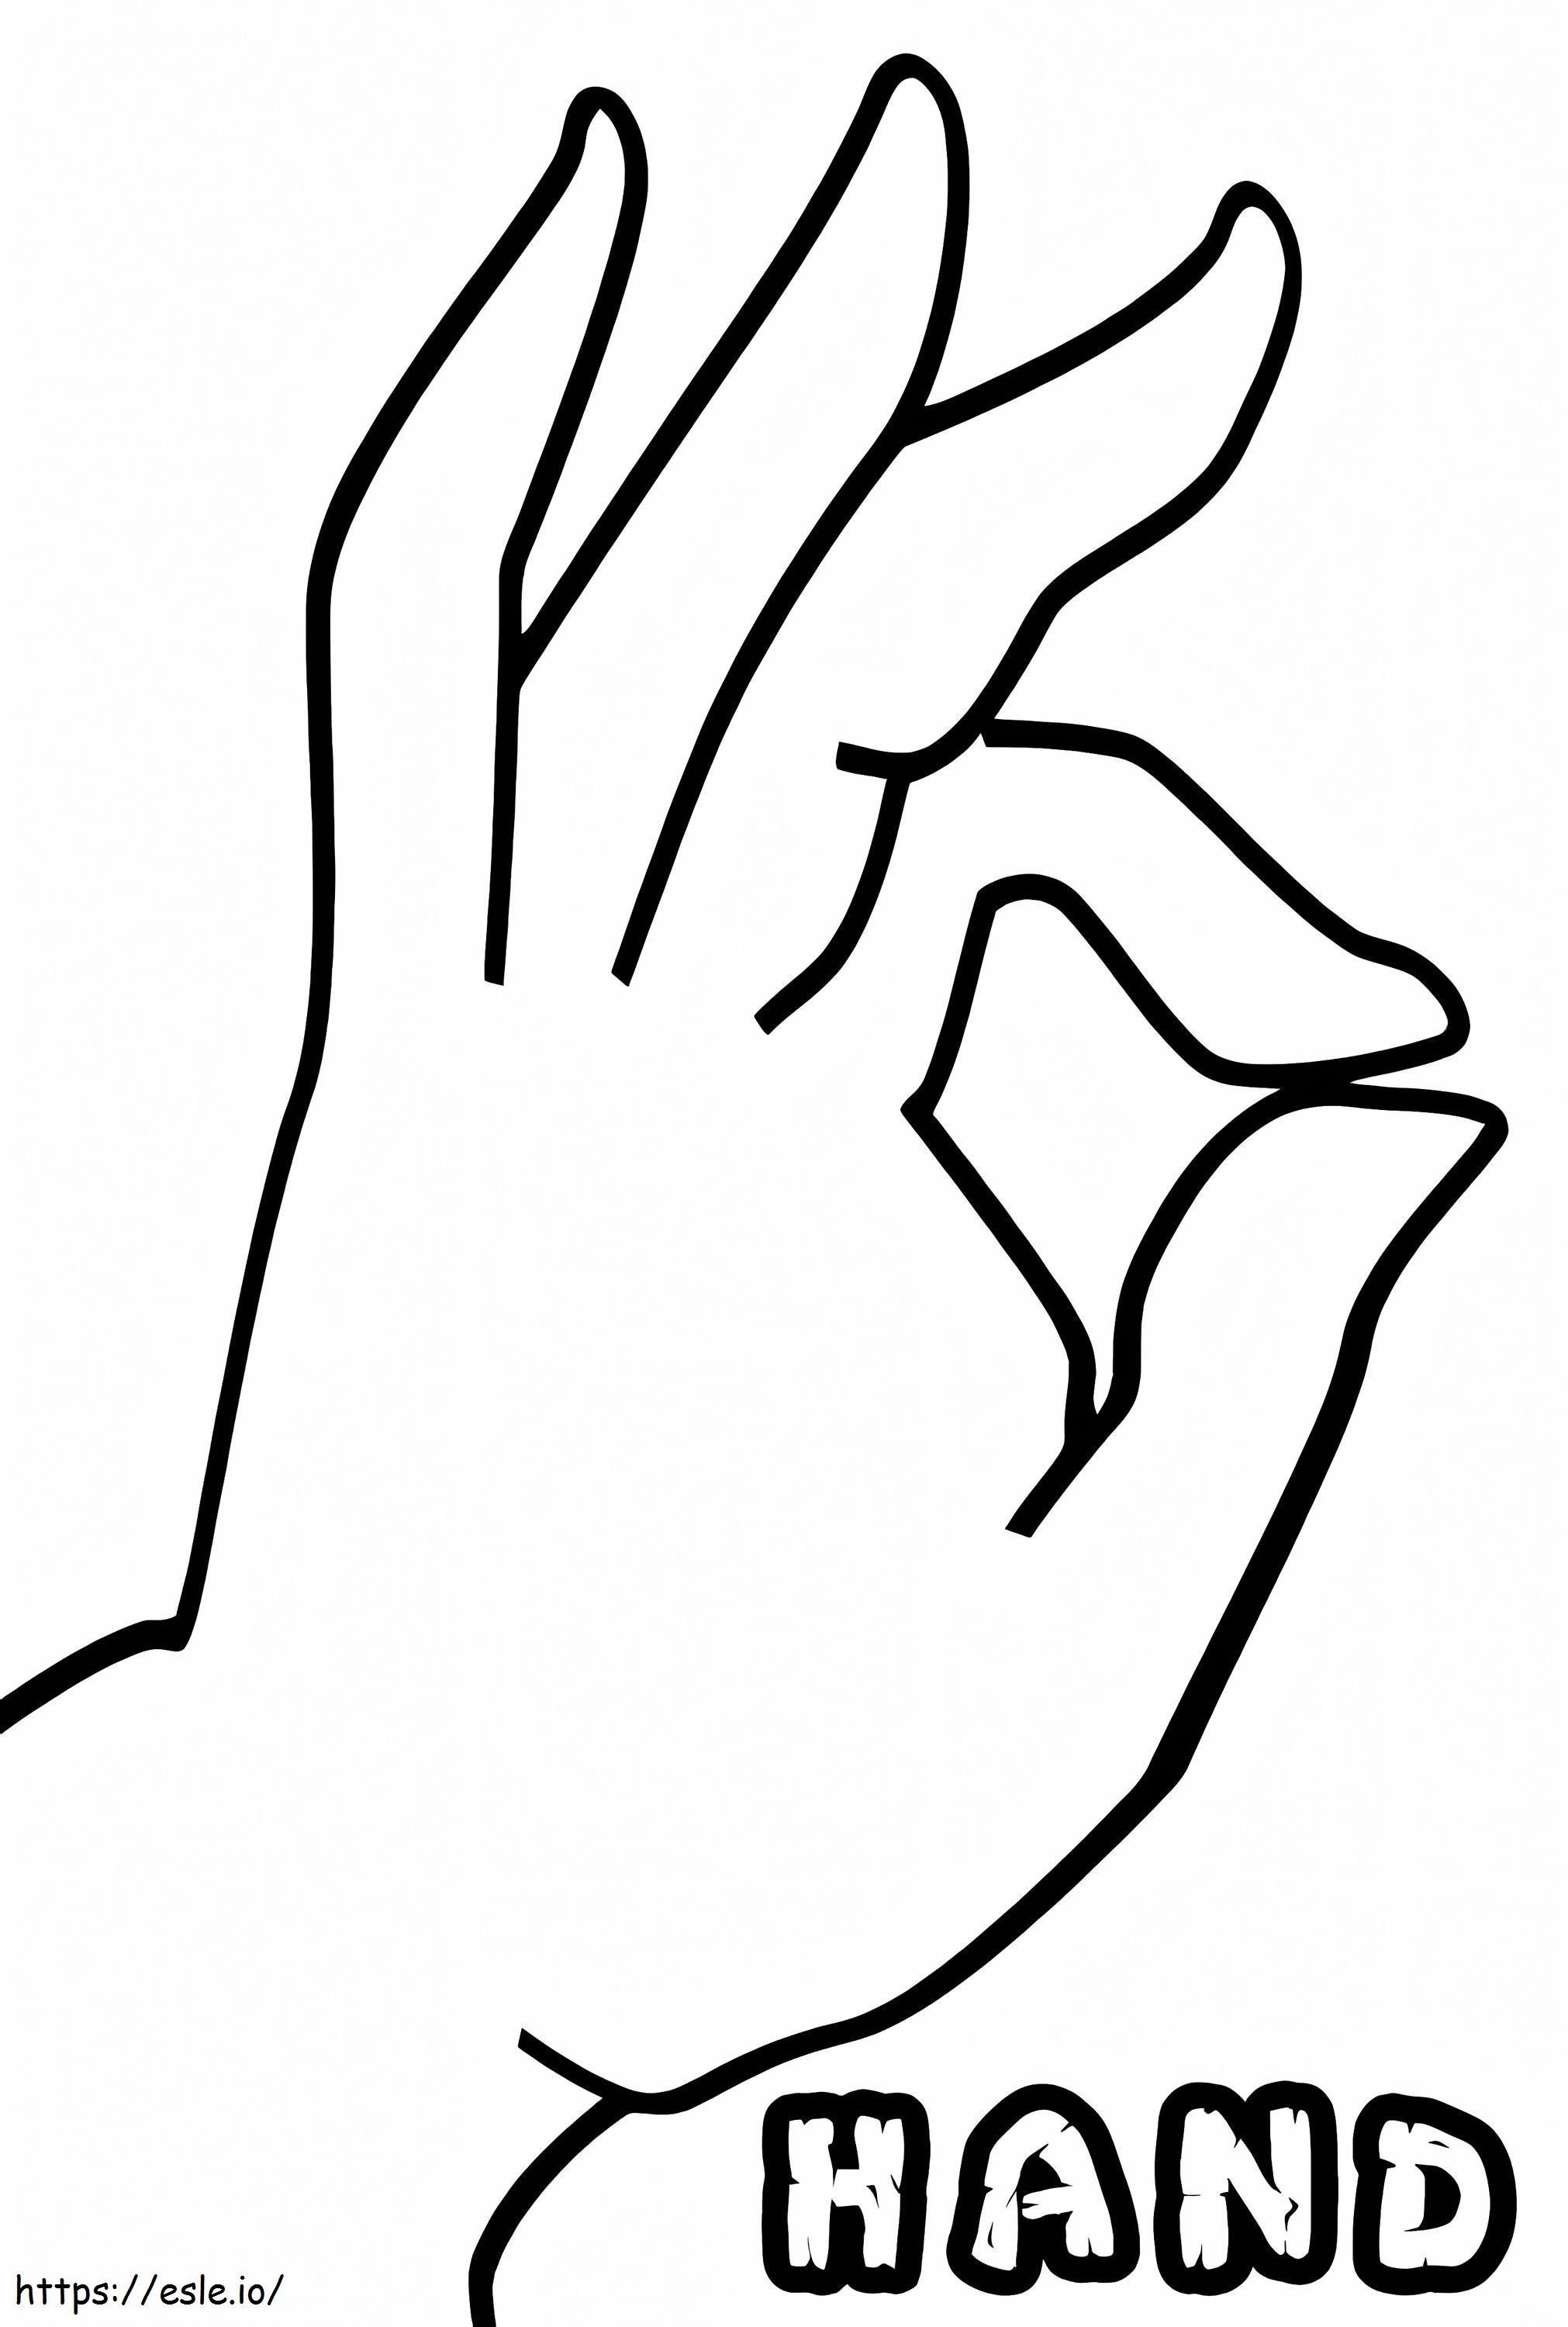 Handzeichen ausmalbilder